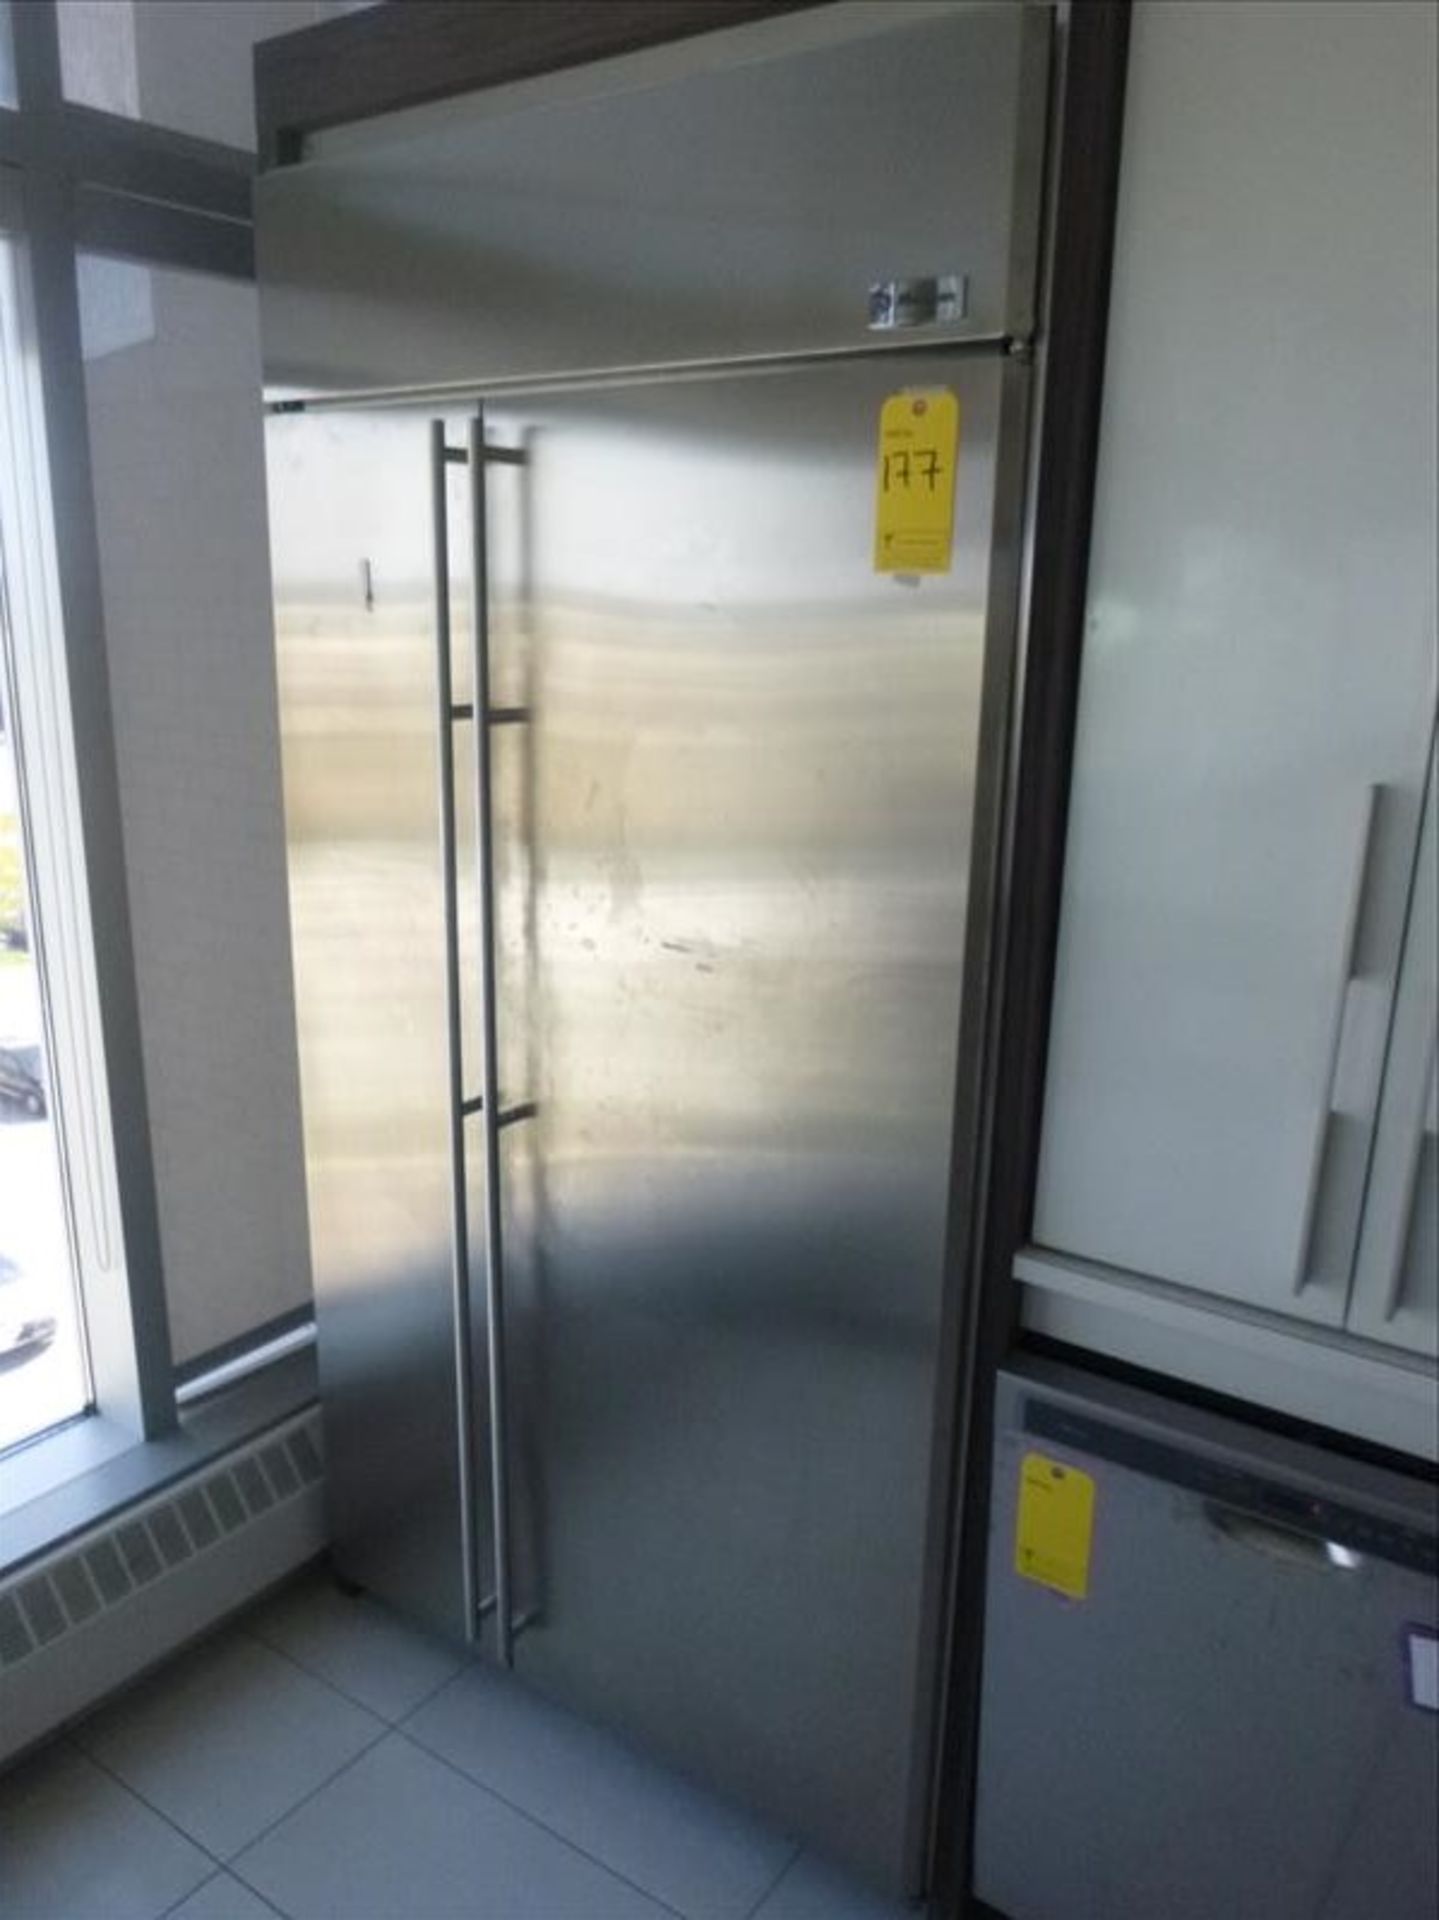 GE Monogram refrigerator, 2-door, s/s [FLR4]